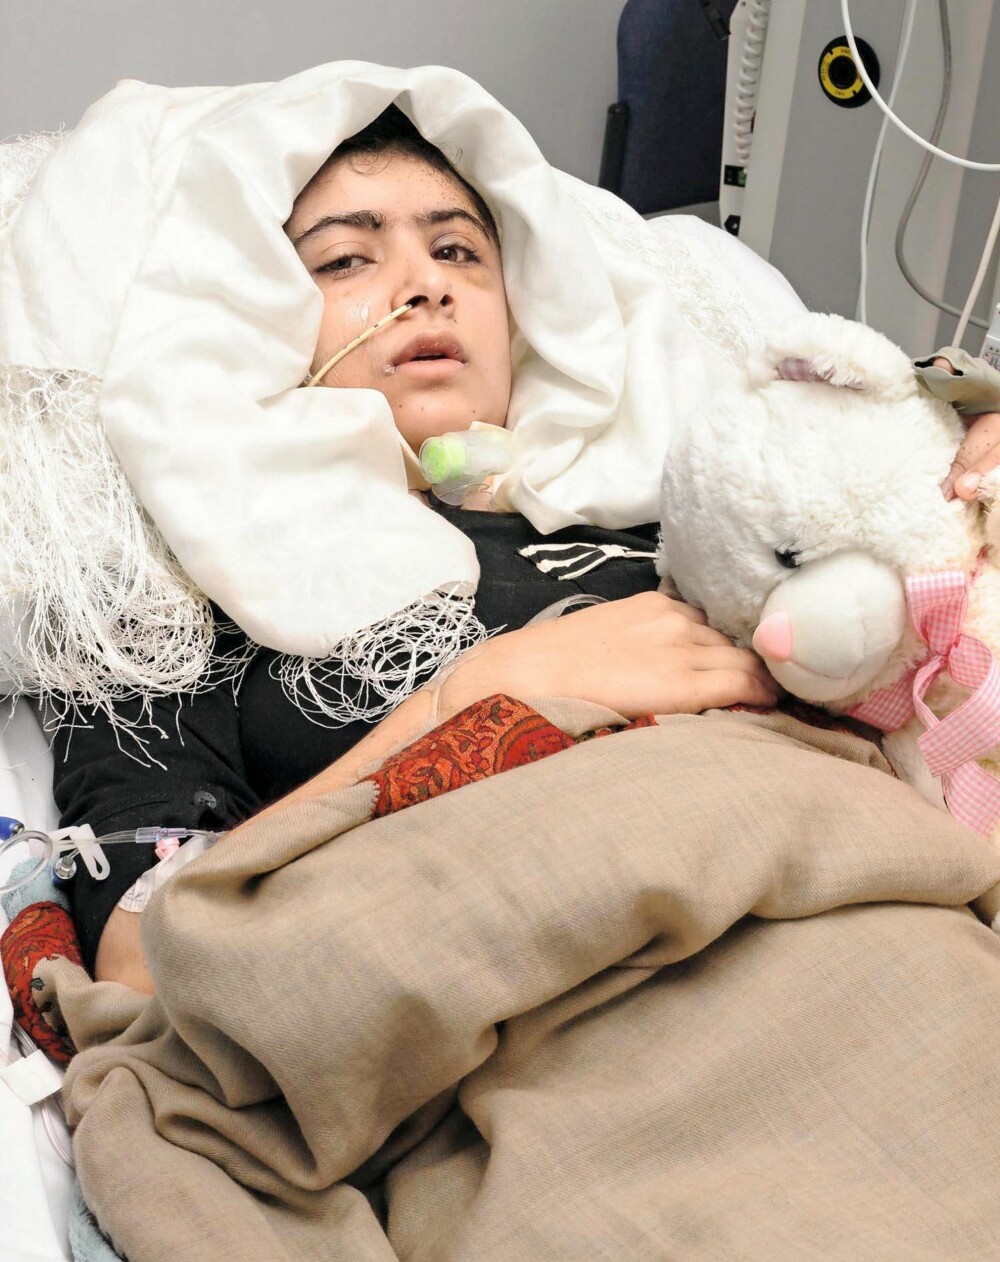 PRISEN FOR FRIHET: Malala ble skutt av aliban fordi de anså henne som en trussel. Operasjoner i Pakistan og England ble redningen.